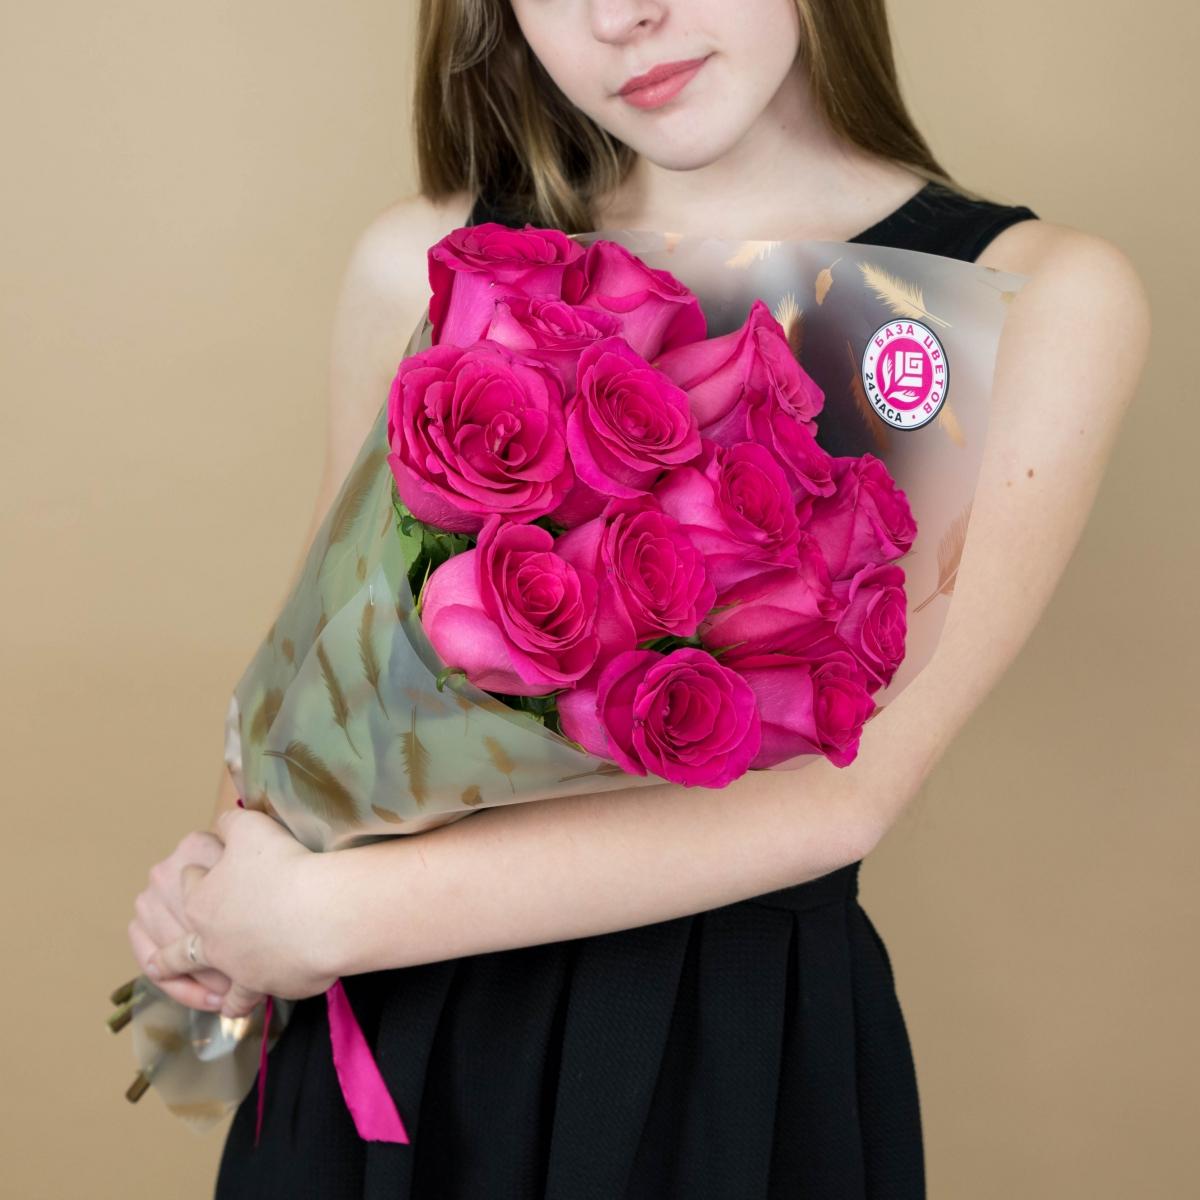 Букет из розовых роз 15 шт 40 см (Эквадор) (артикул букета  94872)